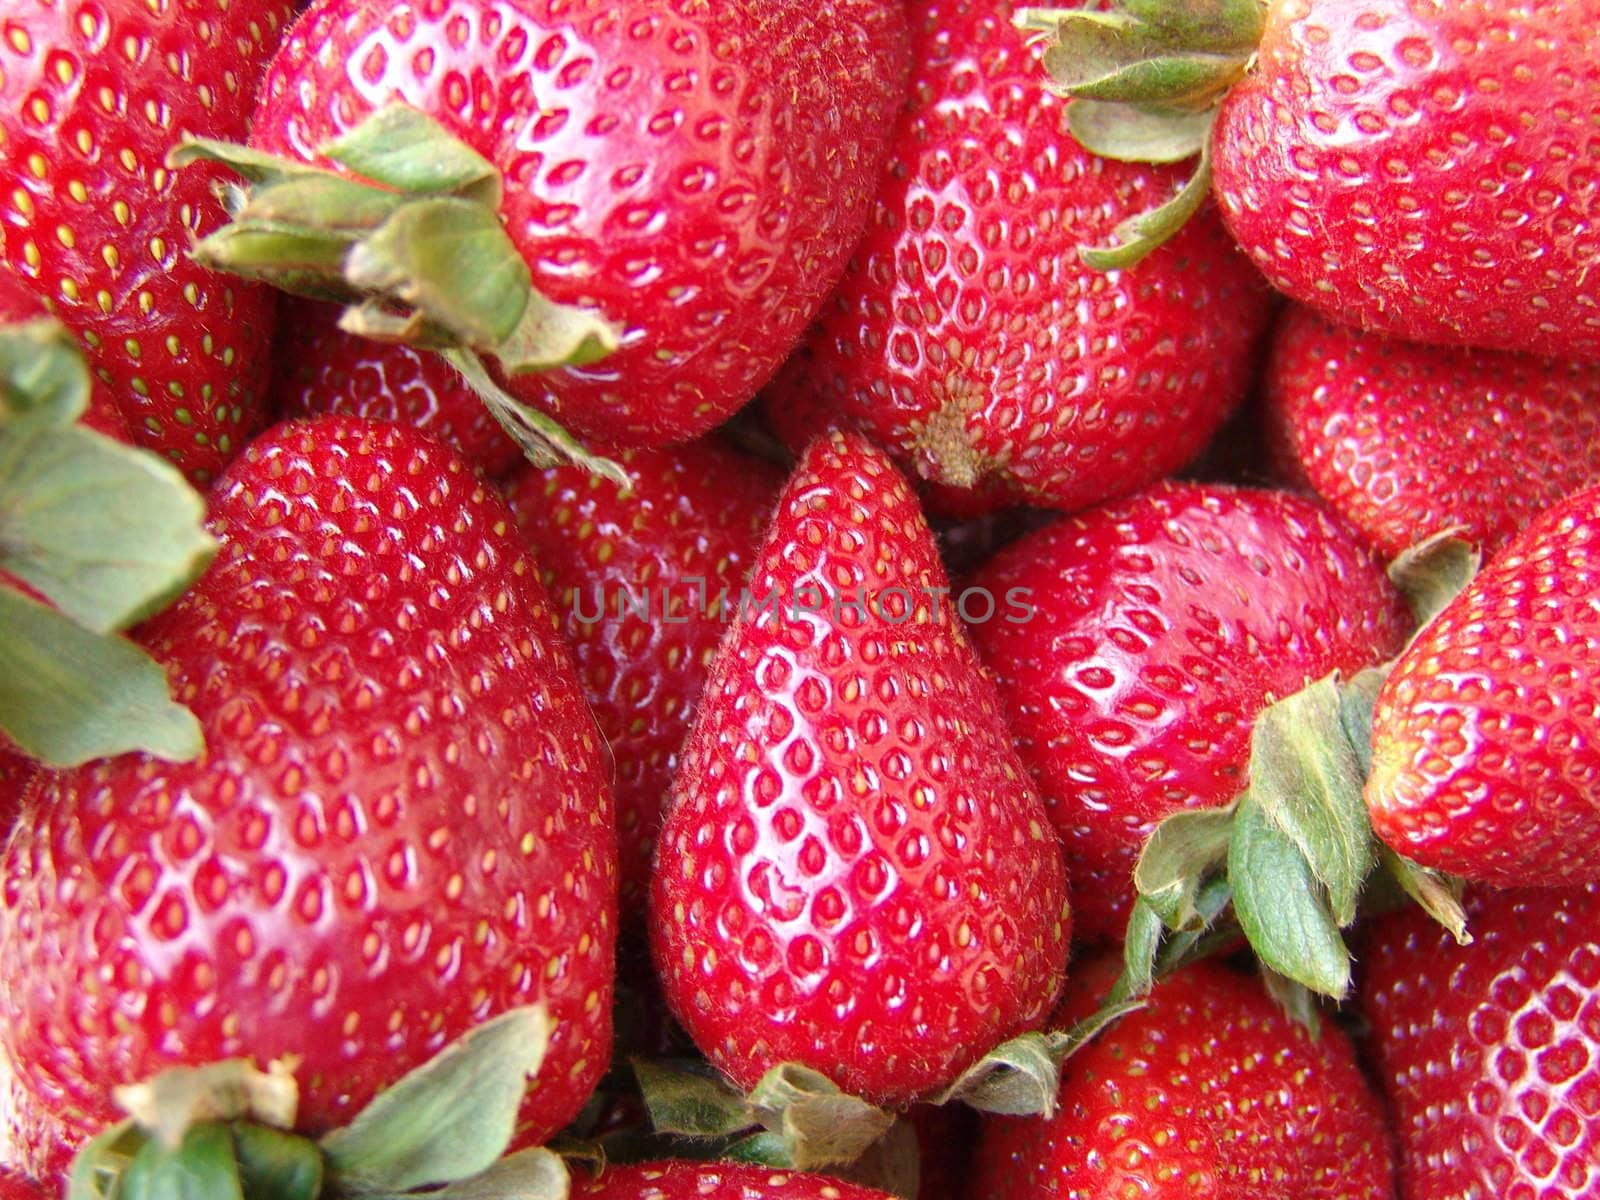 Strawberries by raliand